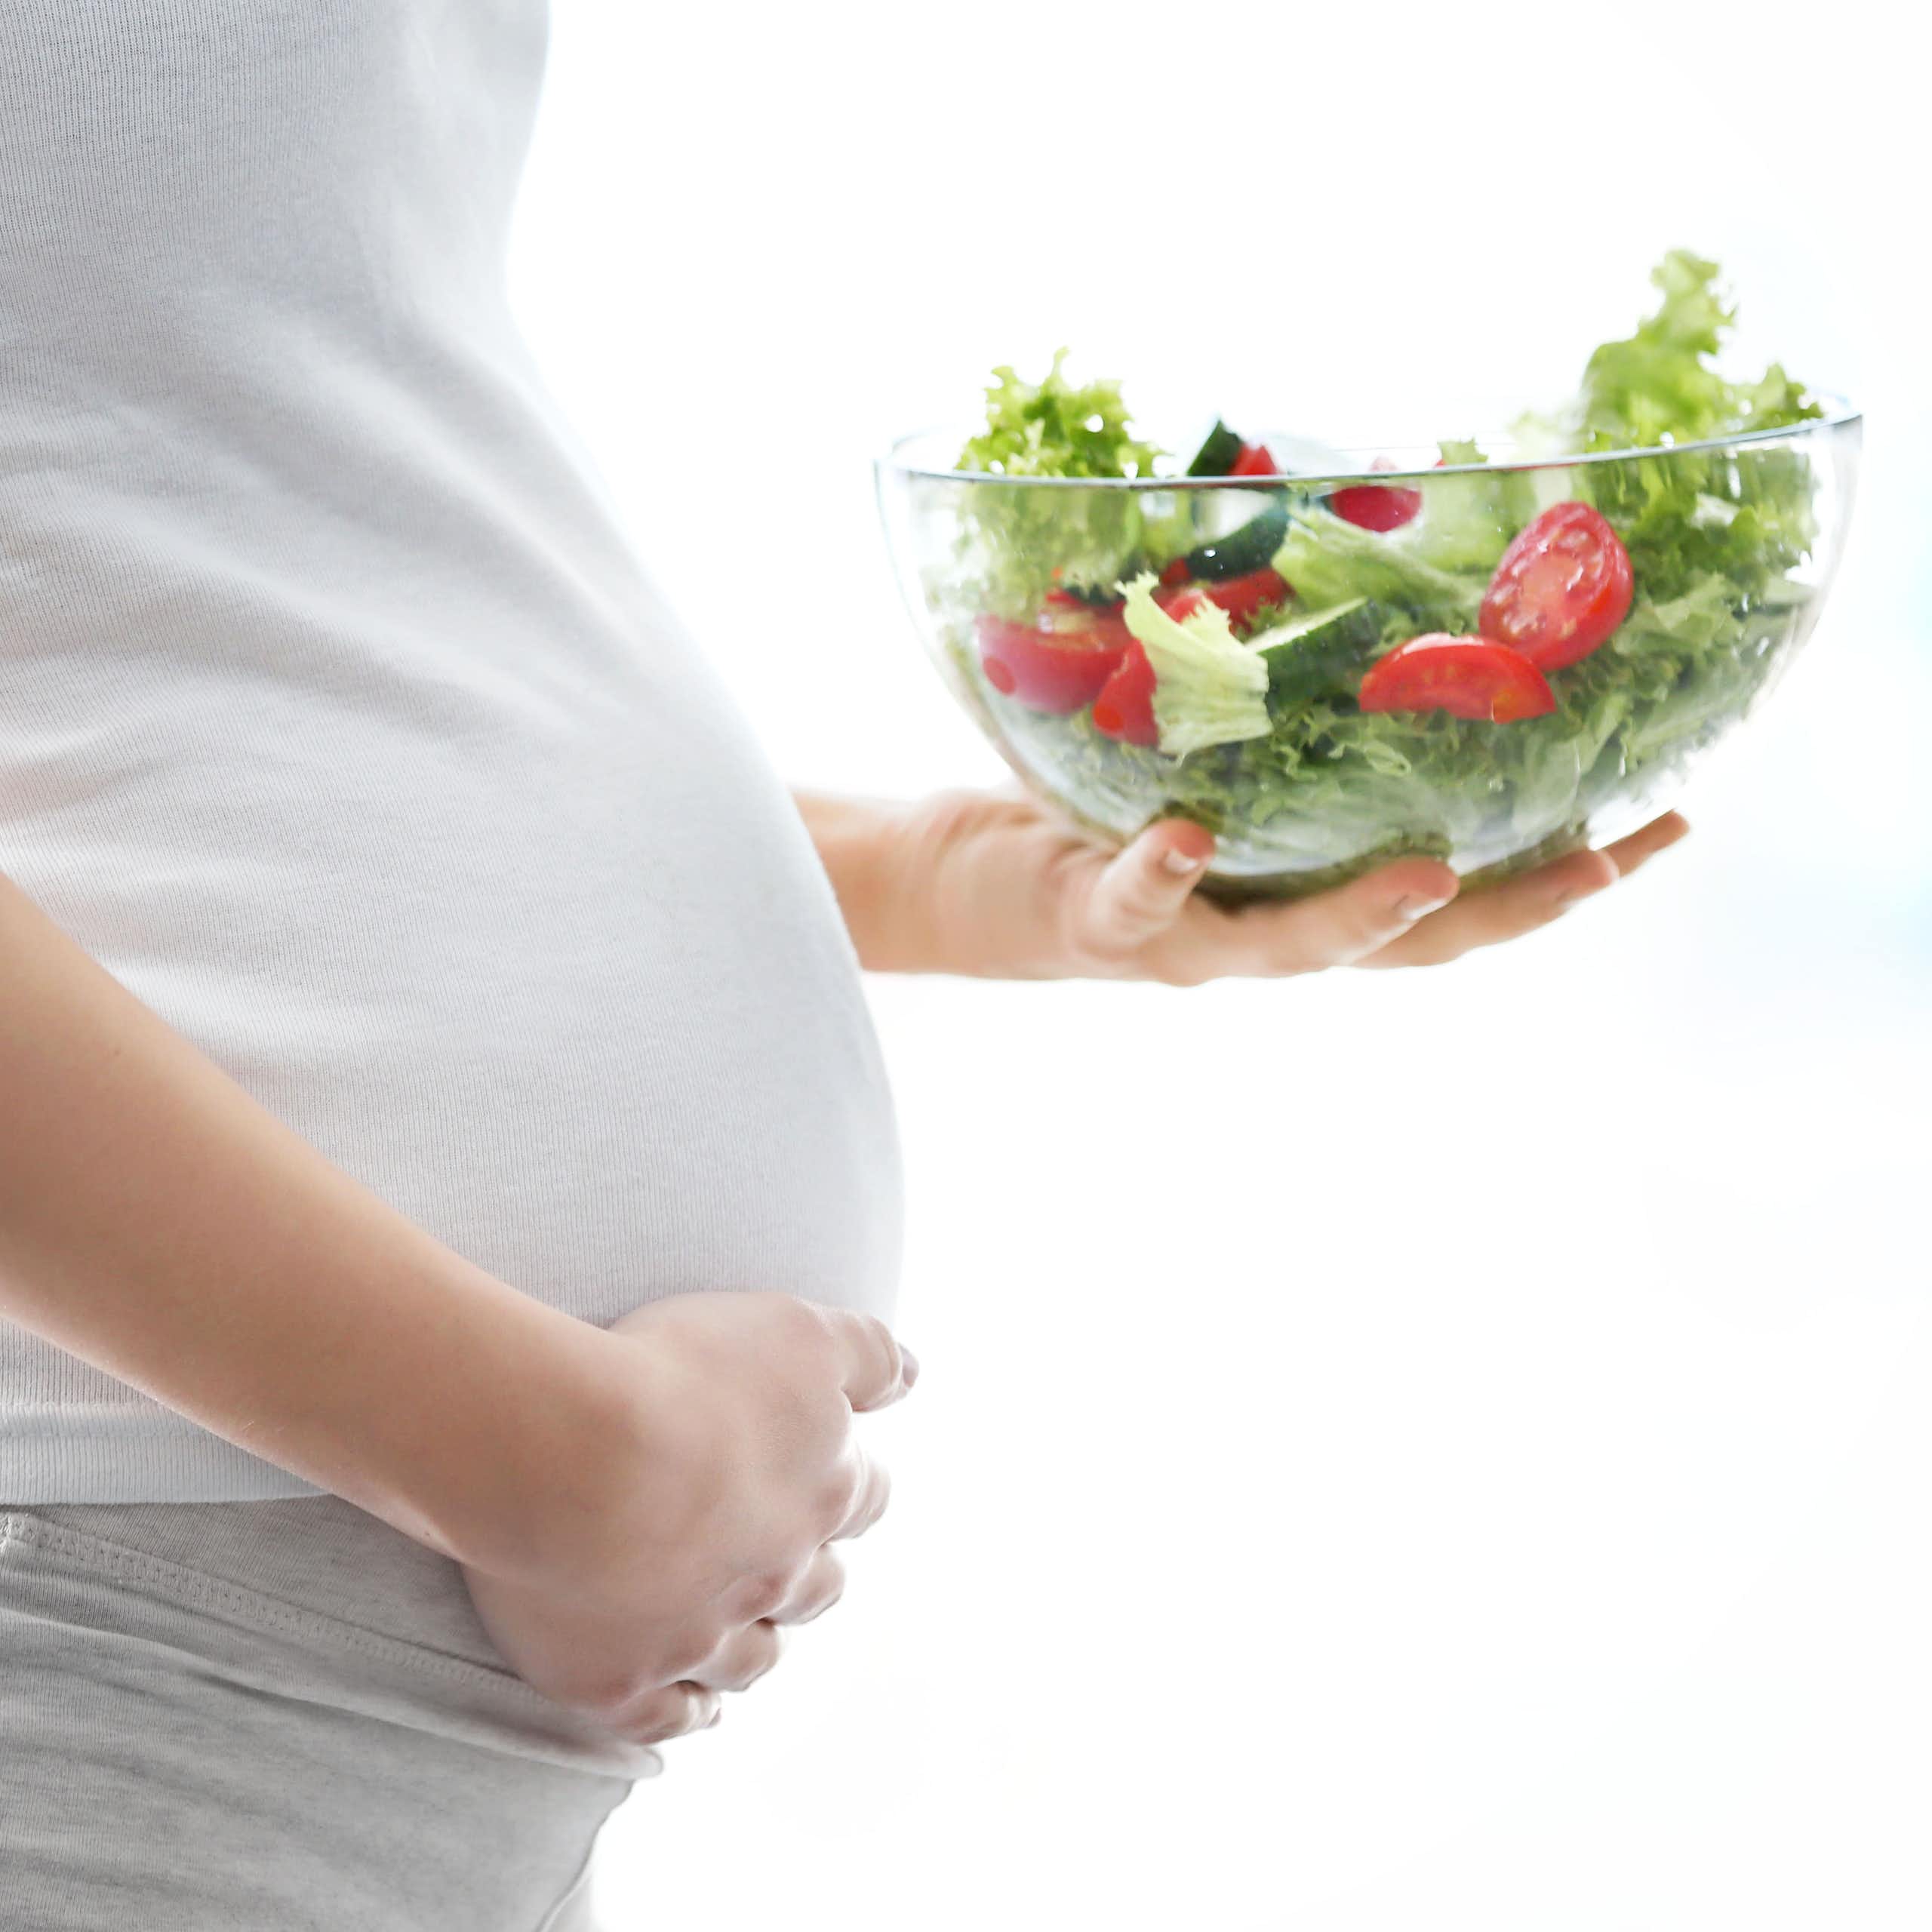 Adieu au mythe du « manger pour deux » : pourquoi contrôler son poids pendant la grossesse est si important